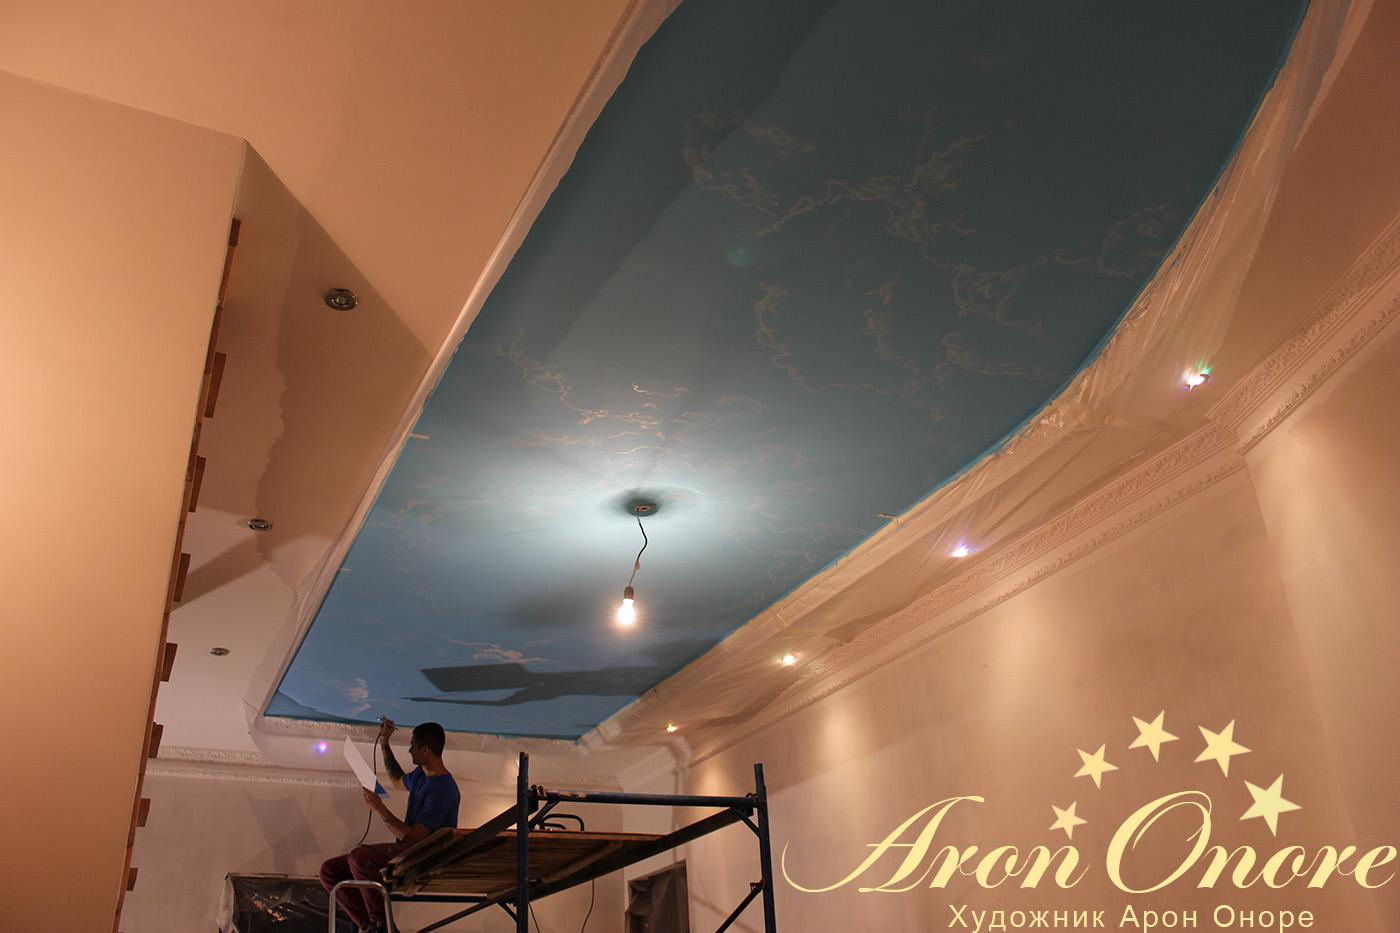 Художники студии Арон Оноре создают художественный рисунок на потолке московского дома